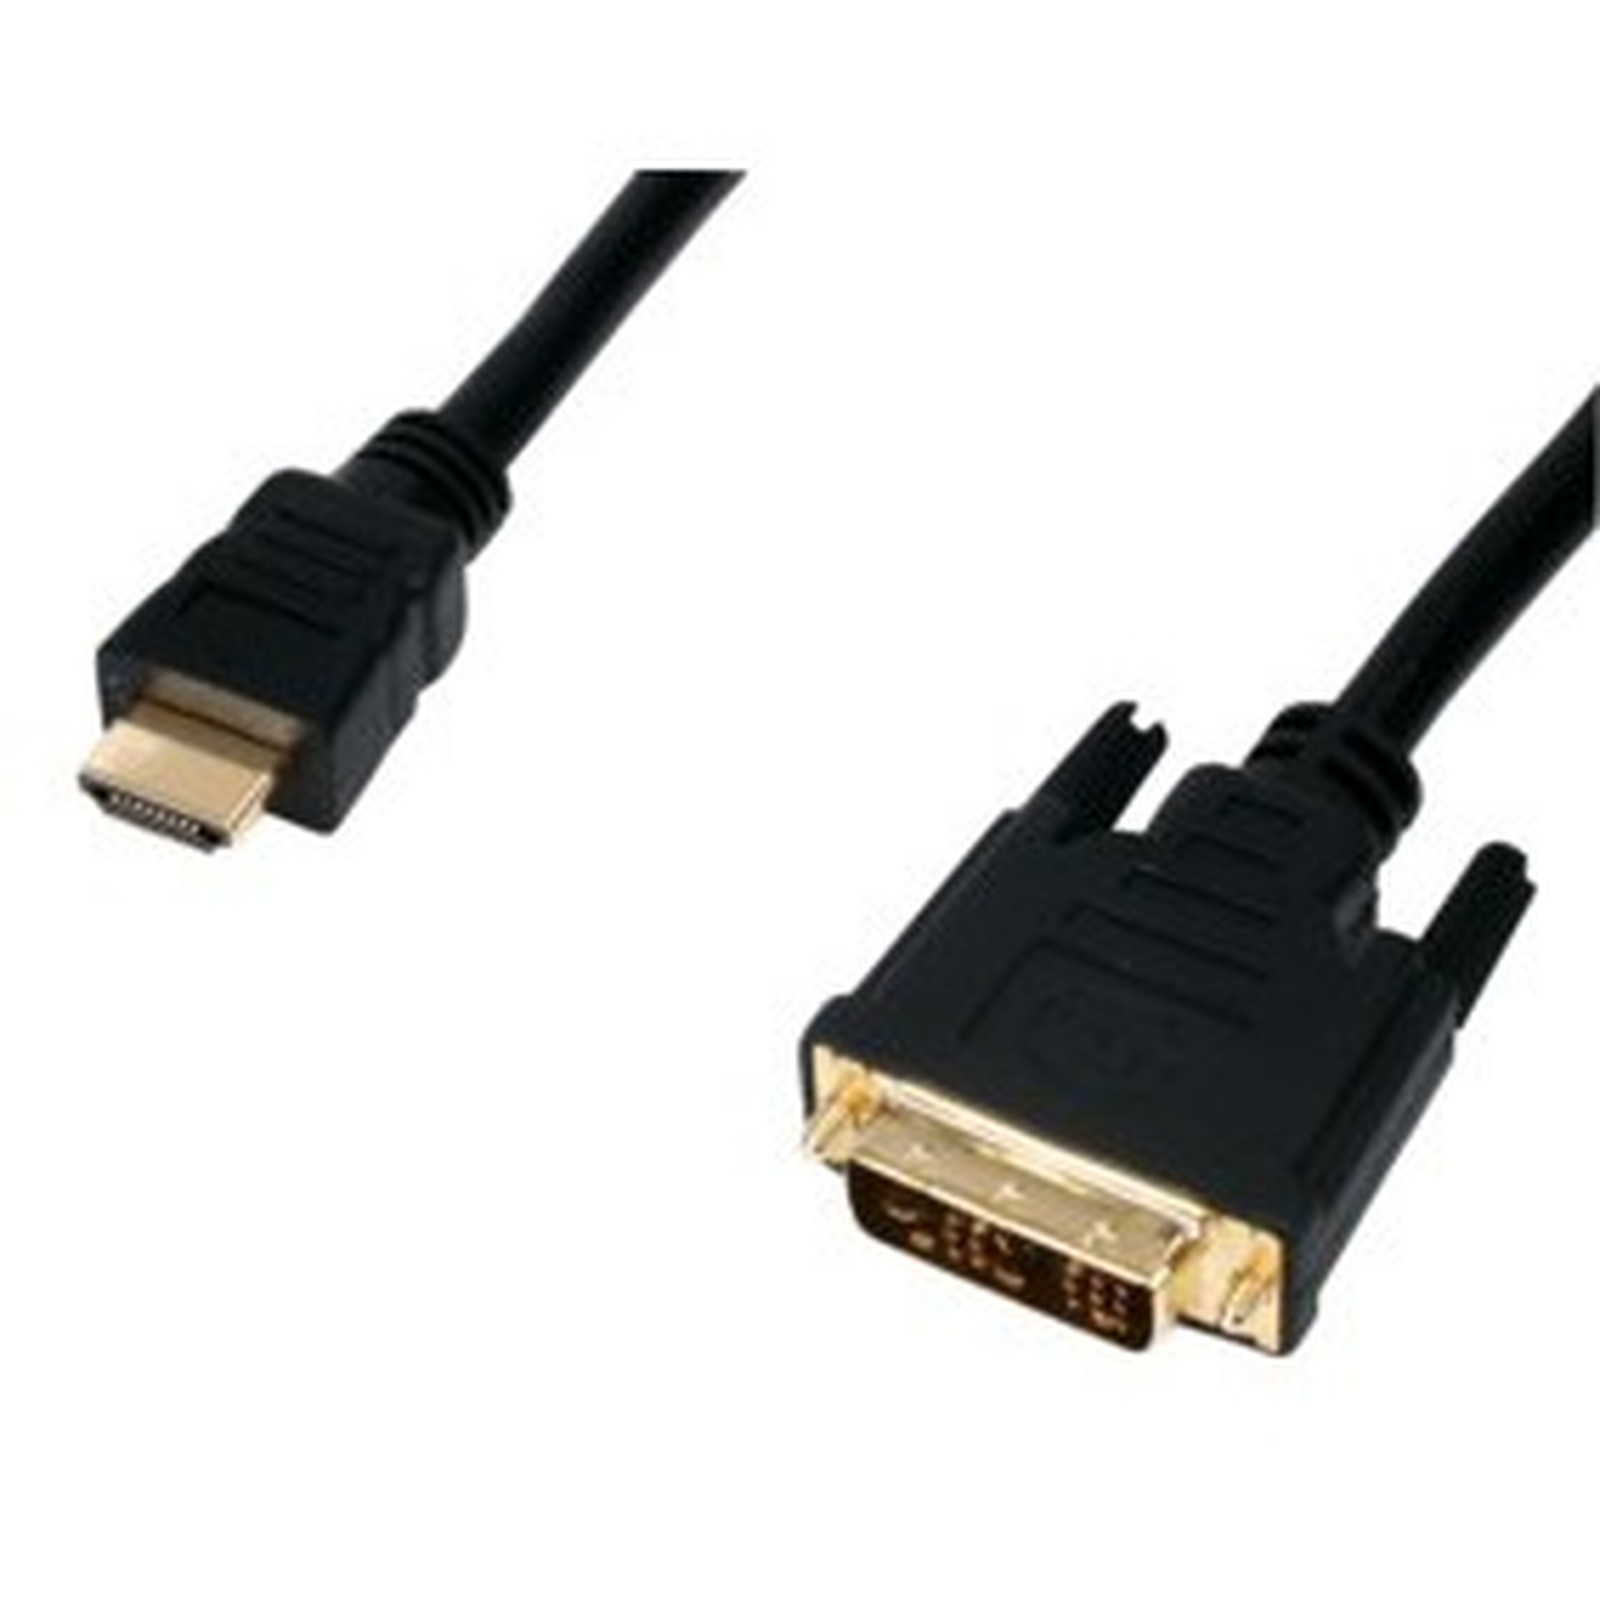 Cable DVI-D Single Link male / HDMI male (1.5 mètres) plaque or - DVI Generique